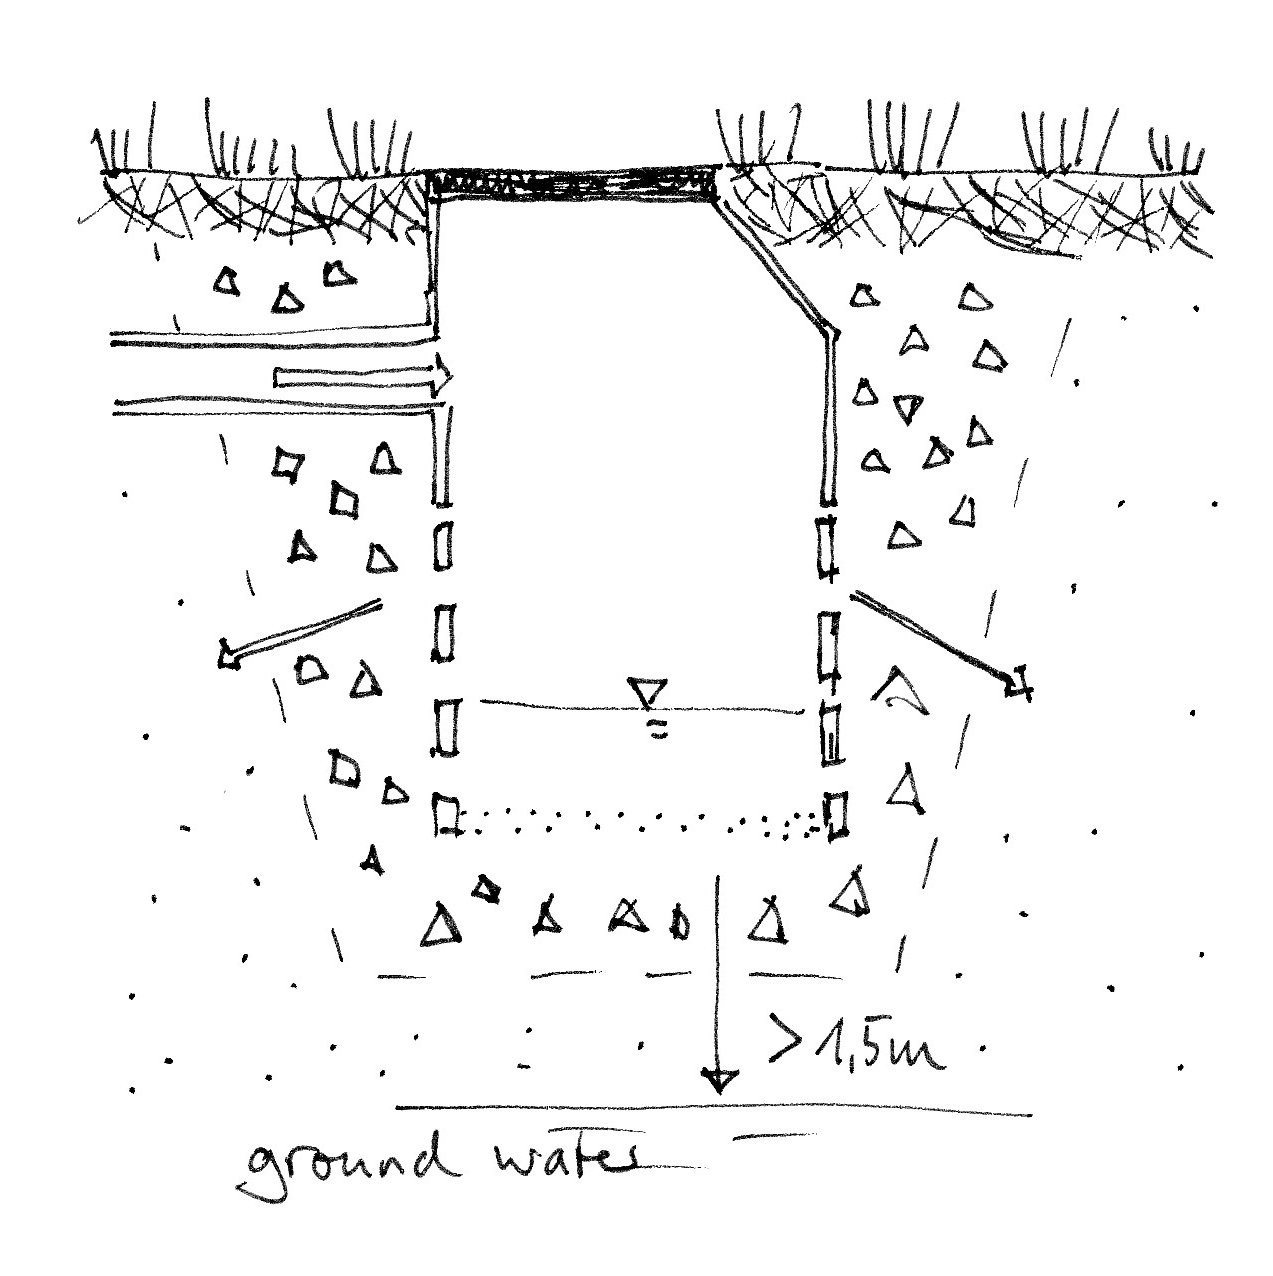 Absorbent wells Image